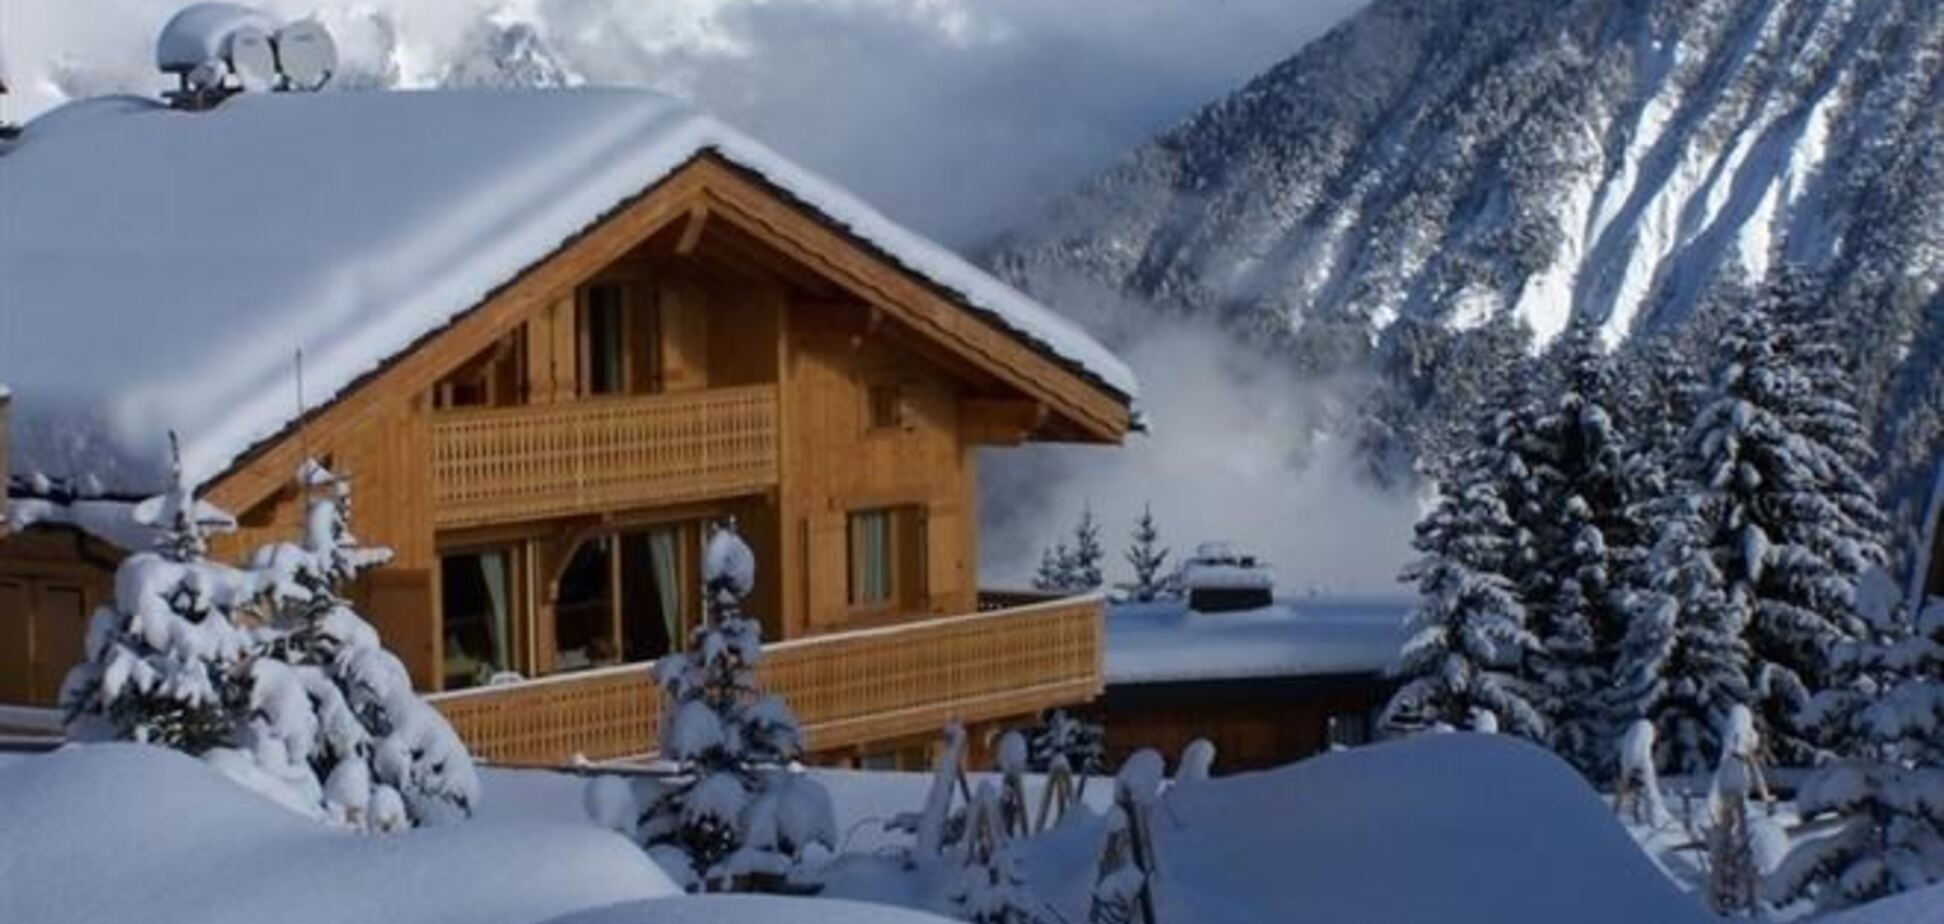 Во всем мире растут цены на элитную недвижимость горнолыжных курортов 